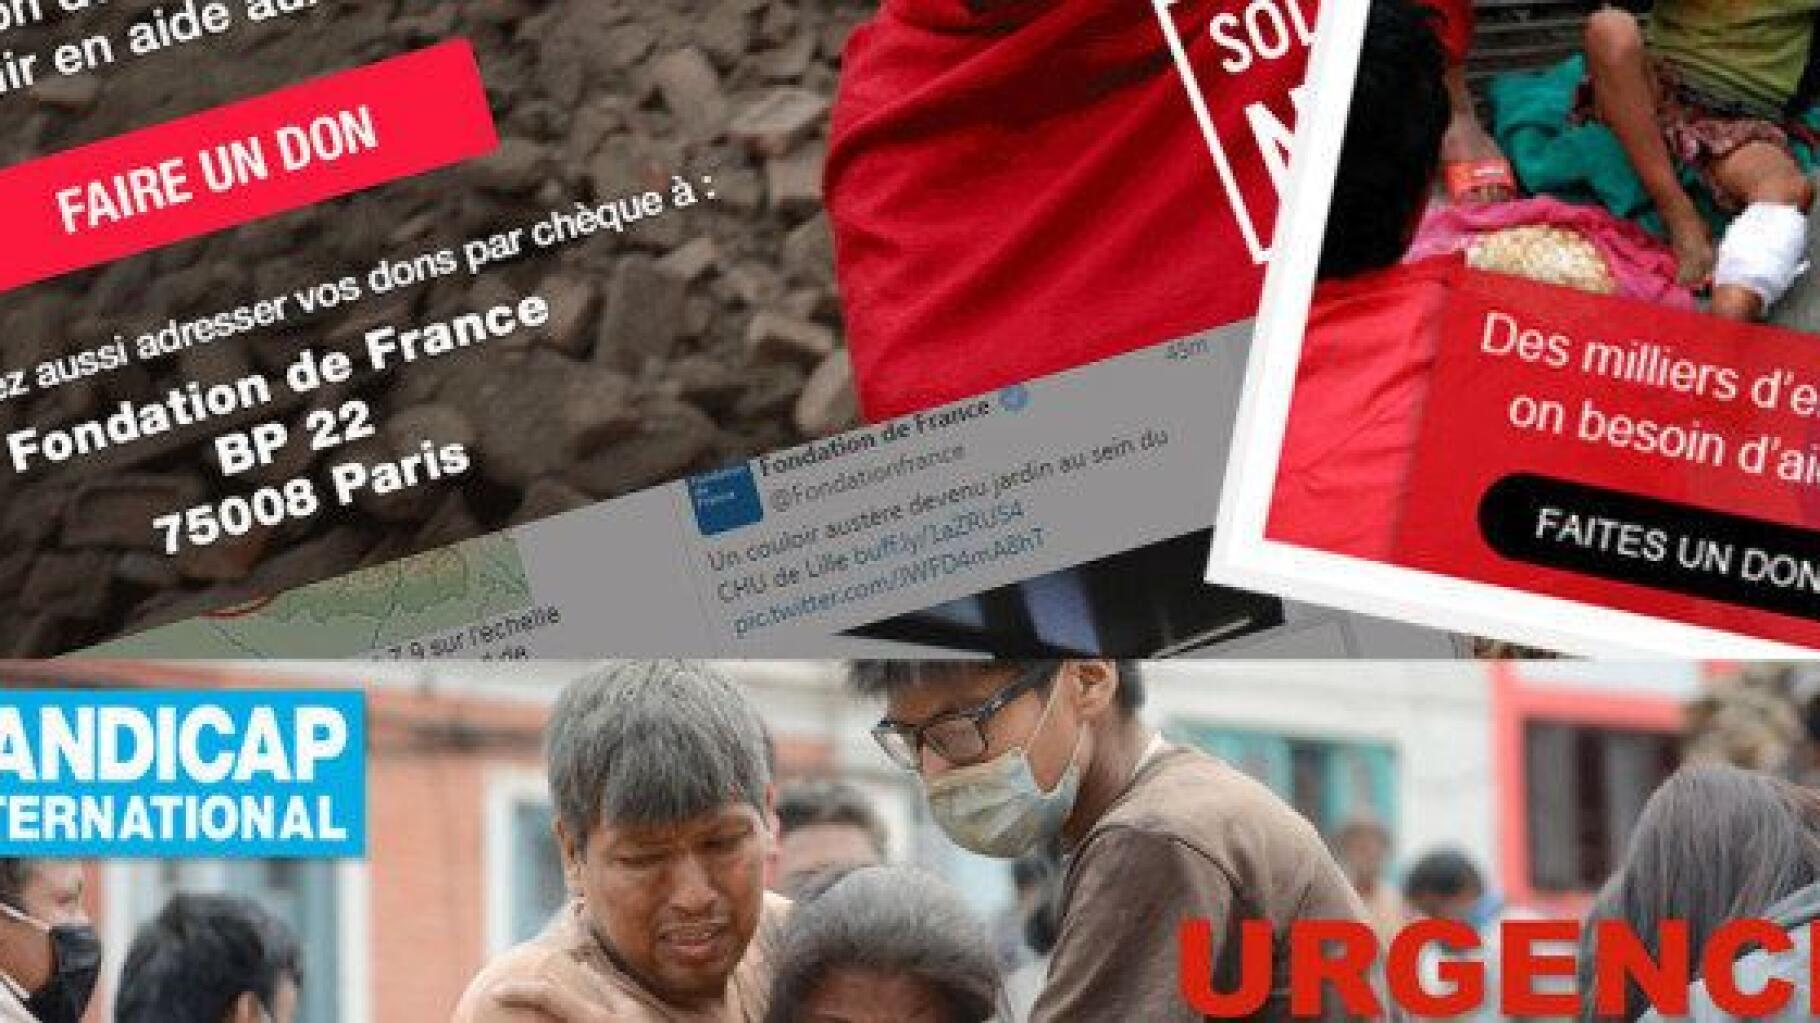 Cartes Unicef, Croix rouge, Action contre la faim : faites vos